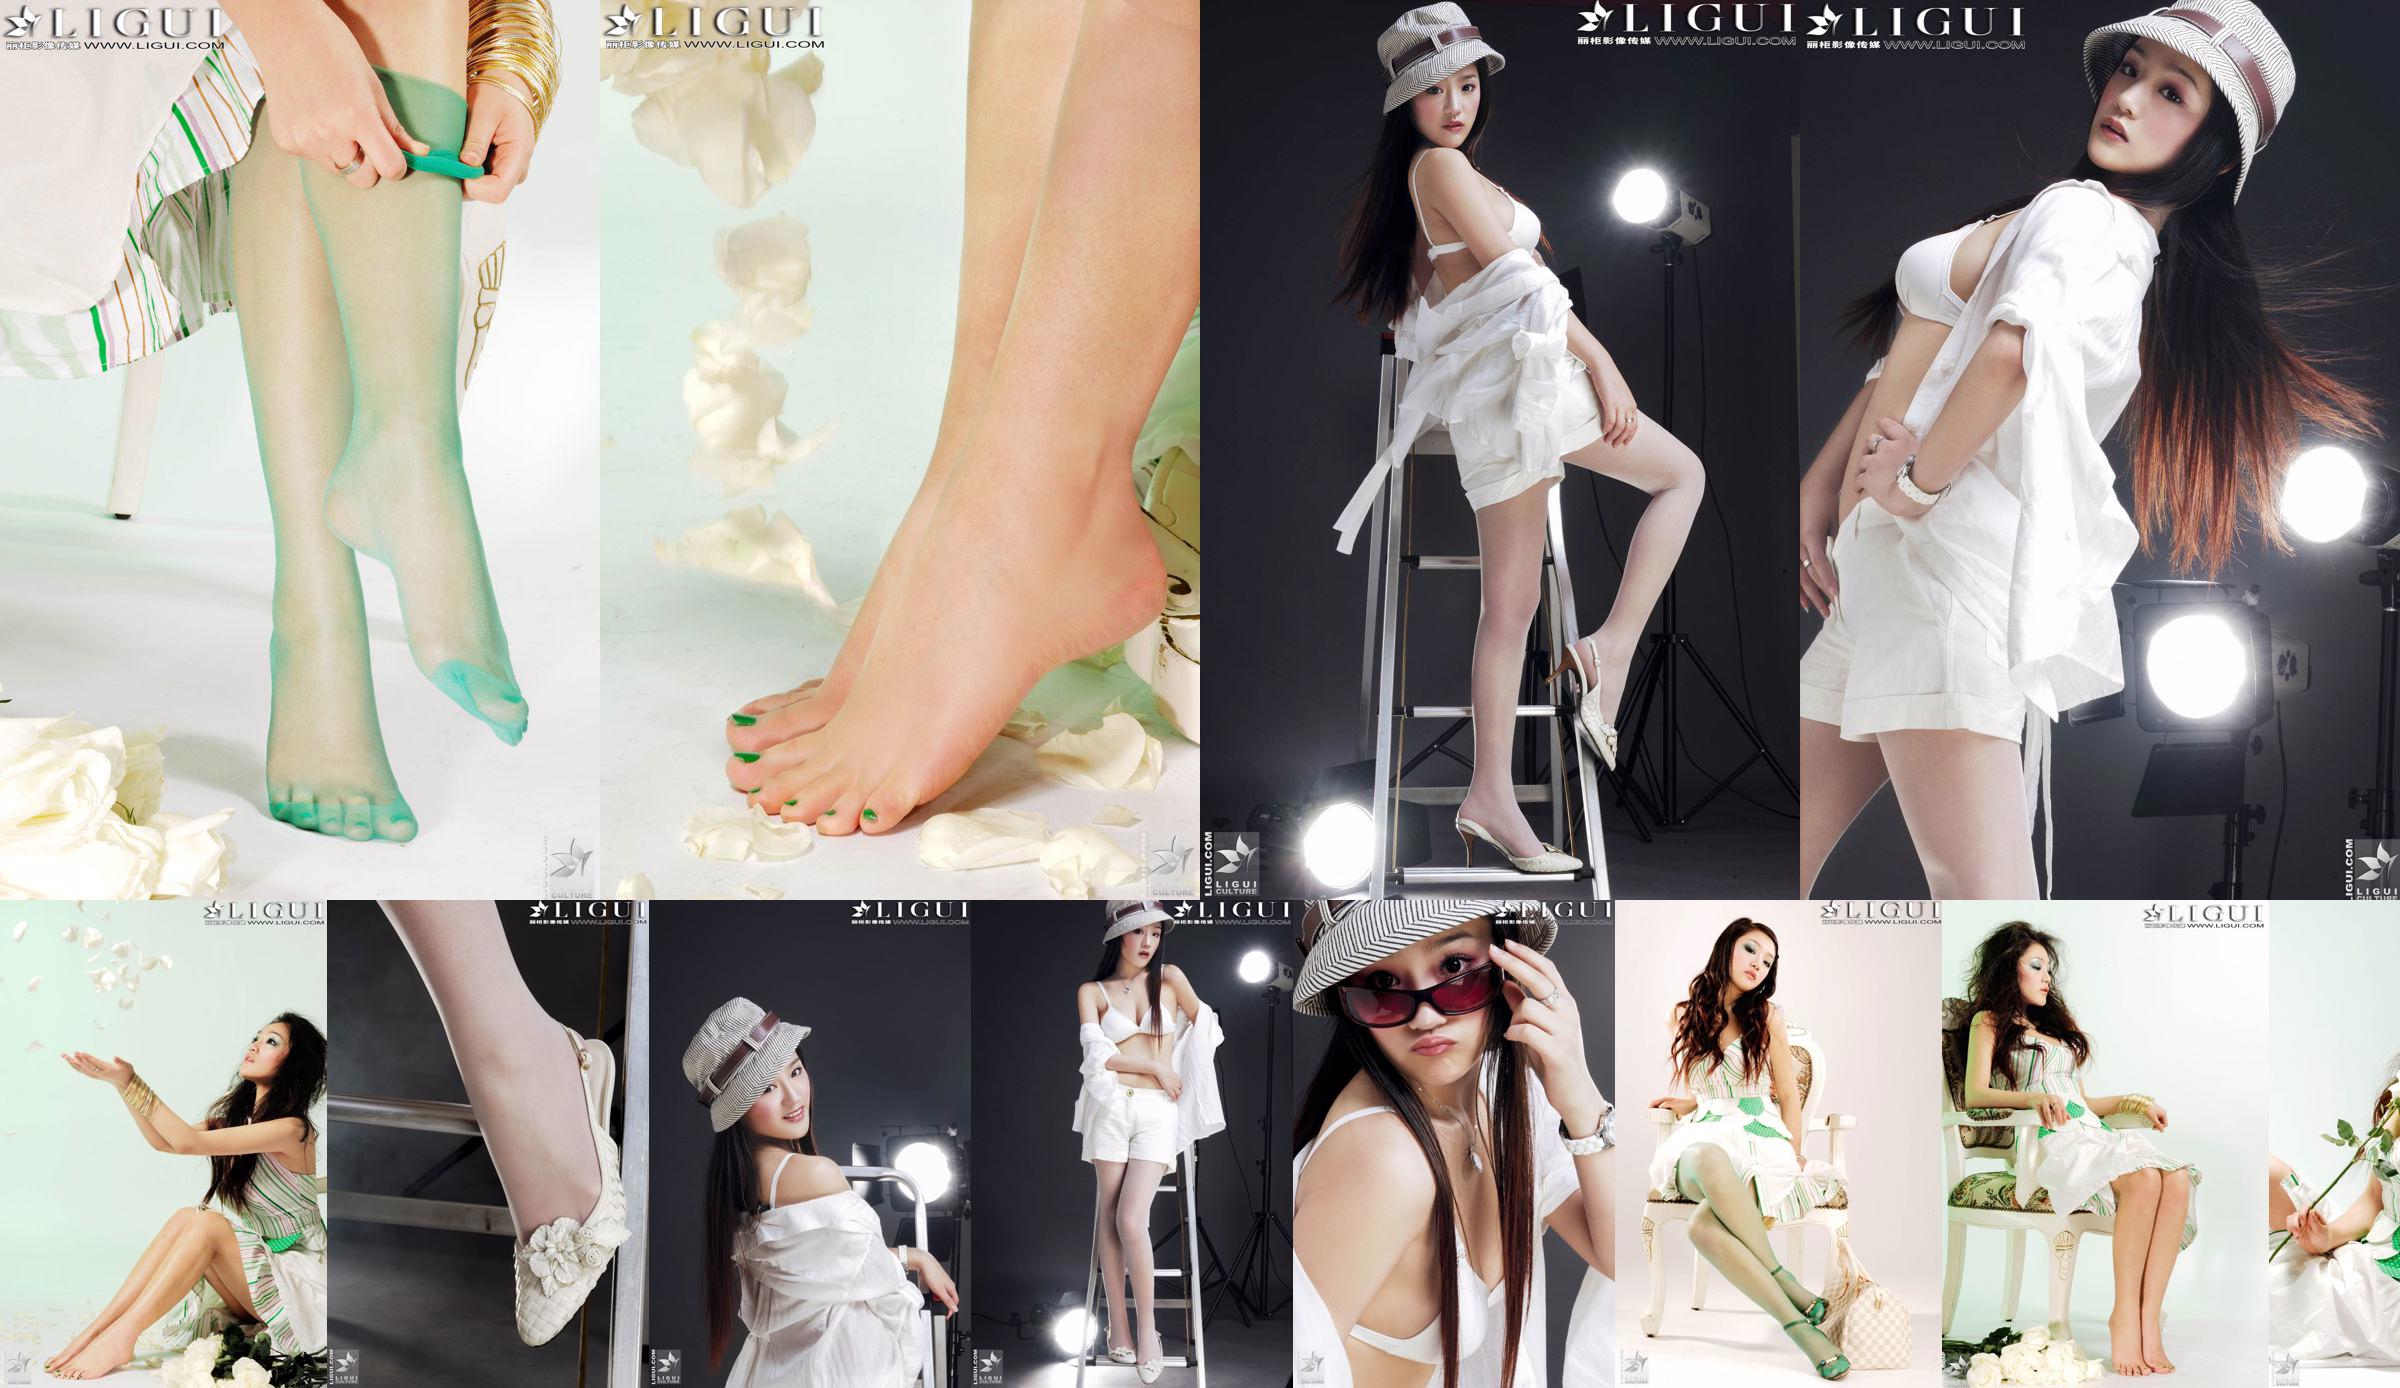 [丽 柜 贵 stopa LiGui] Zdjęcie "Modnej stopy" modelki Zhanga Jingyana przedstawiające piękne nogi i jedwabne stopy No.bf9a4a Strona 1